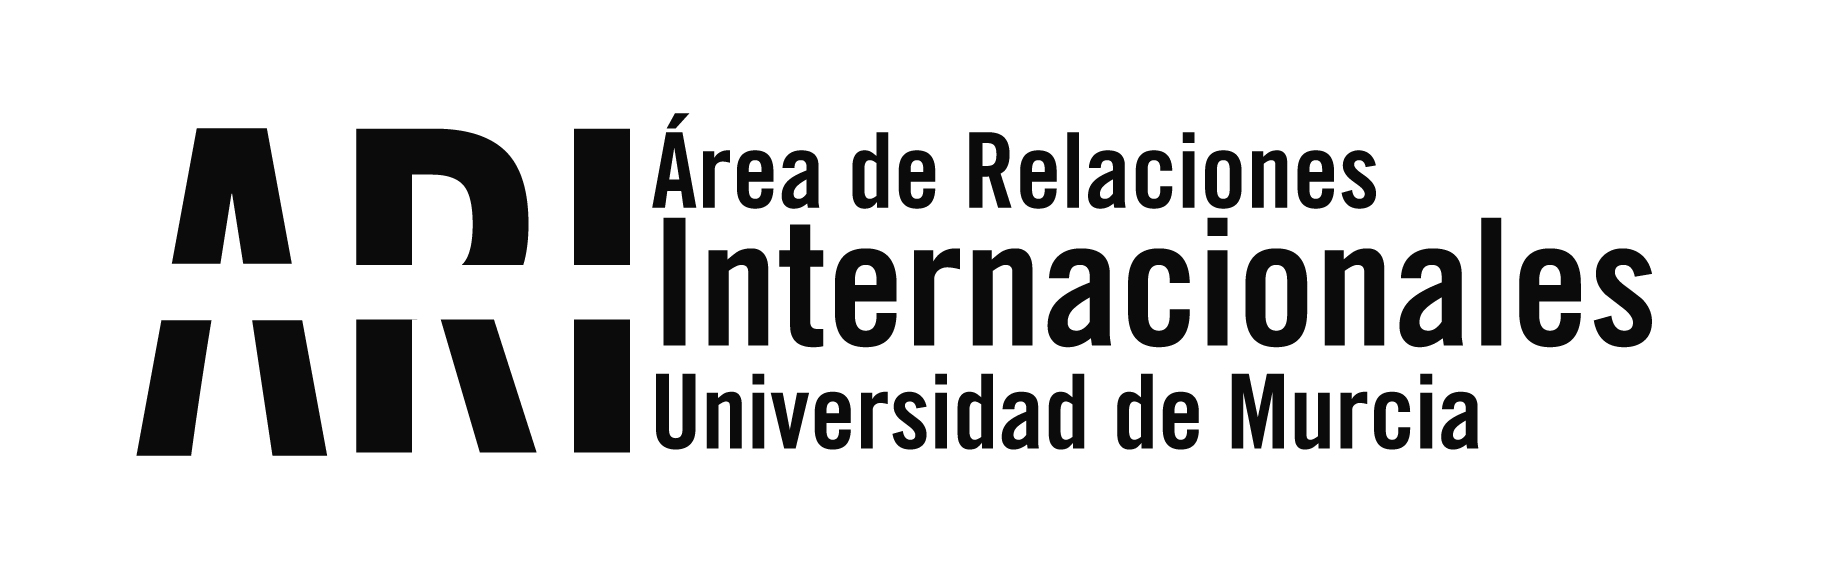 Lanzamiento en la UM del proyecto TIC Cruz del Sur de cooperación entre universidades Latinoamericanas y Europeas - Área de Relaciones Internacionales